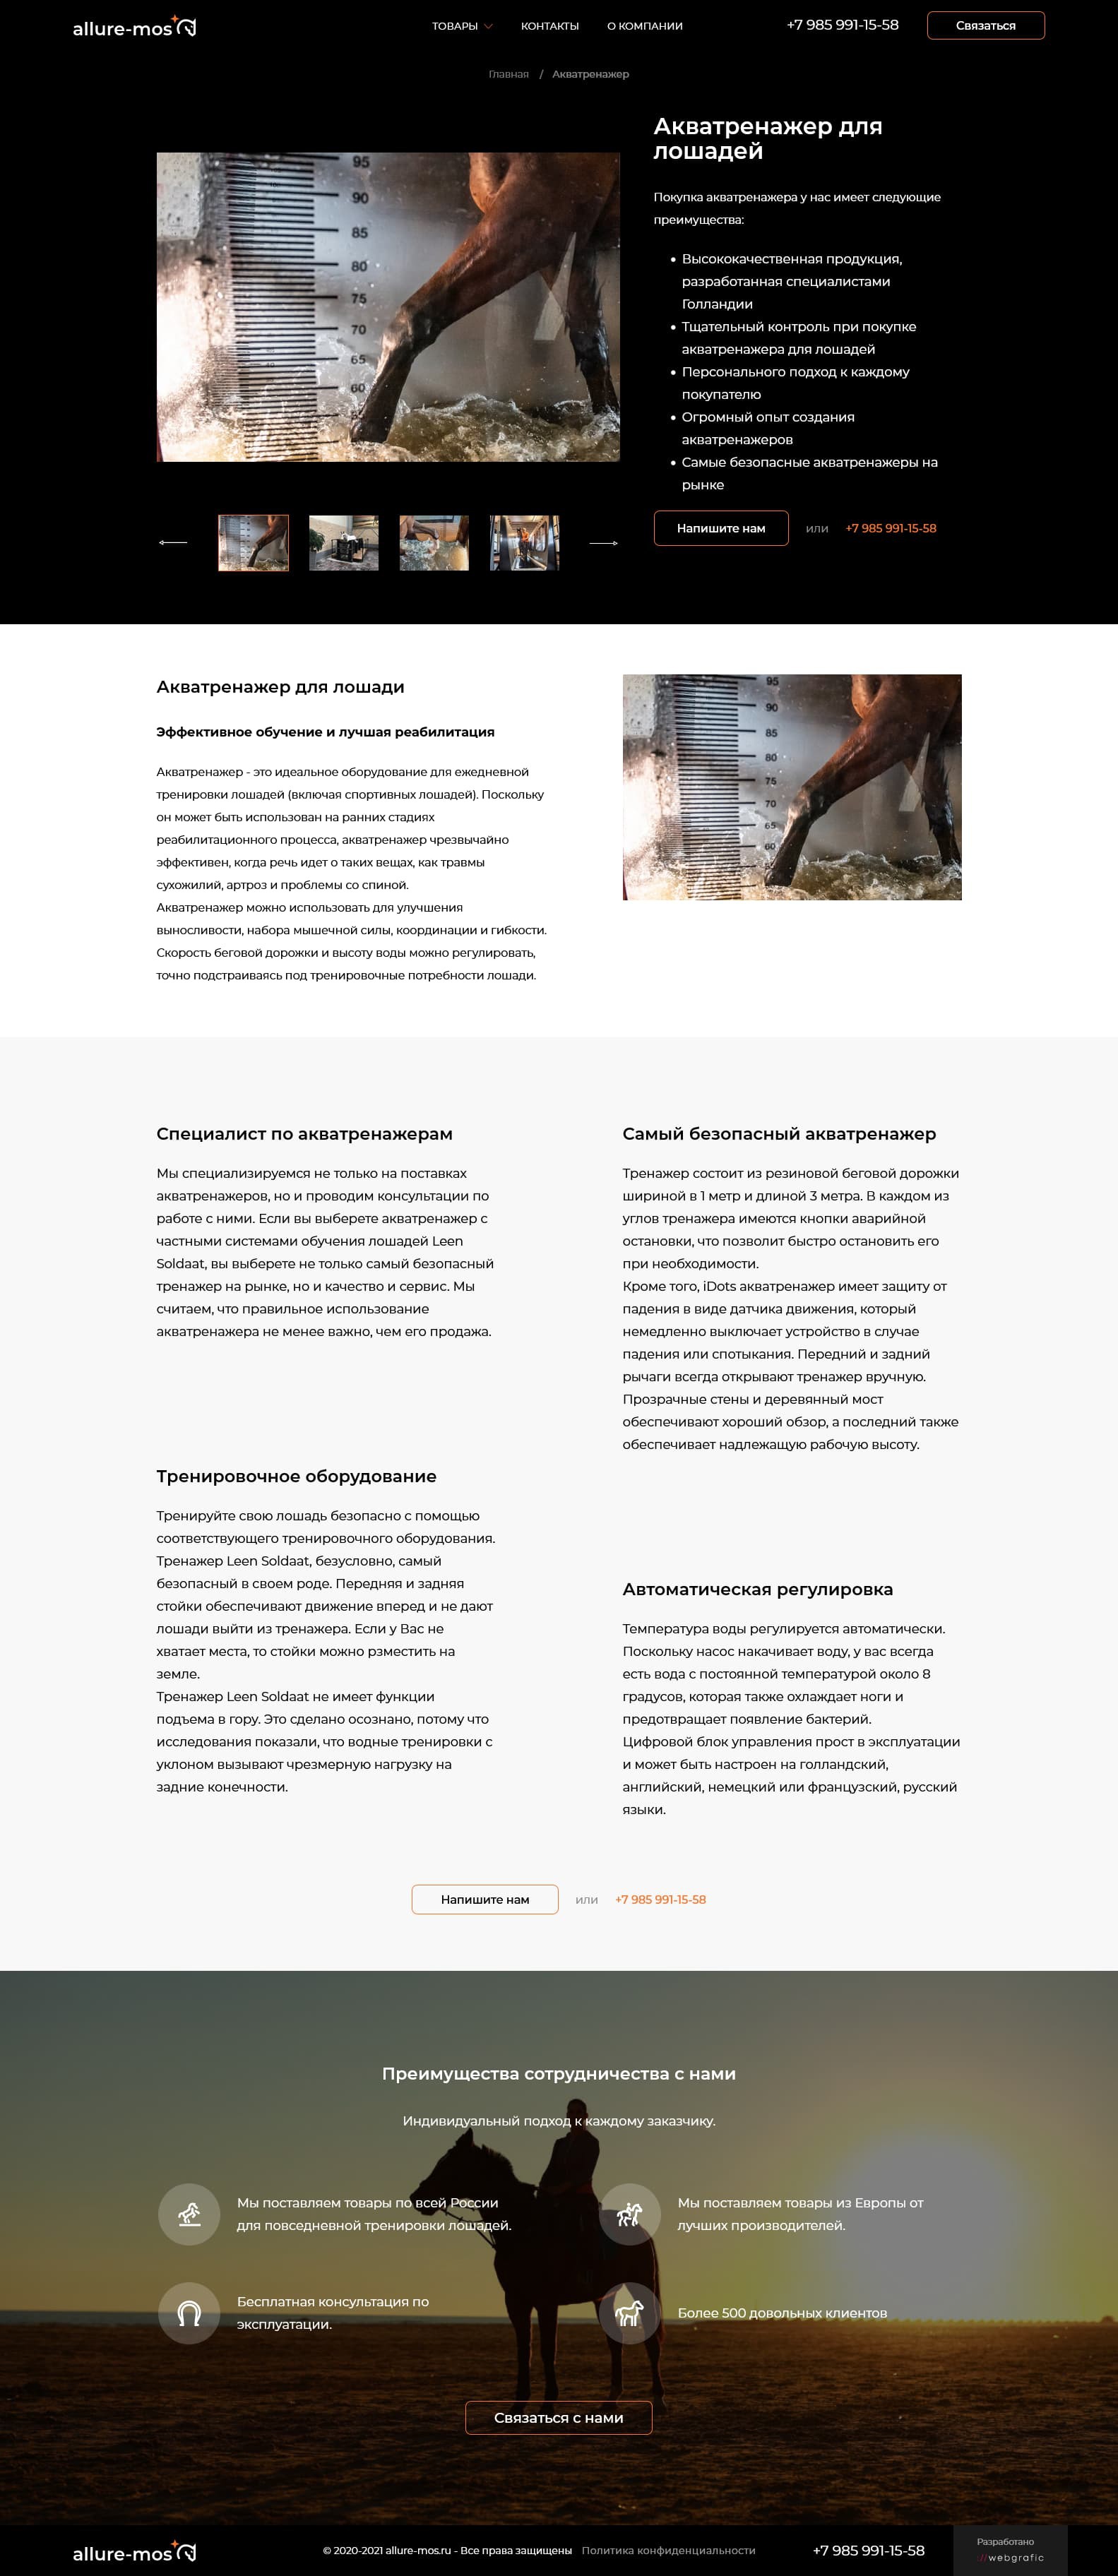 Разработка корпоративного сайта товаров для повседневной тренировки лошадей Allure-Mos.ru